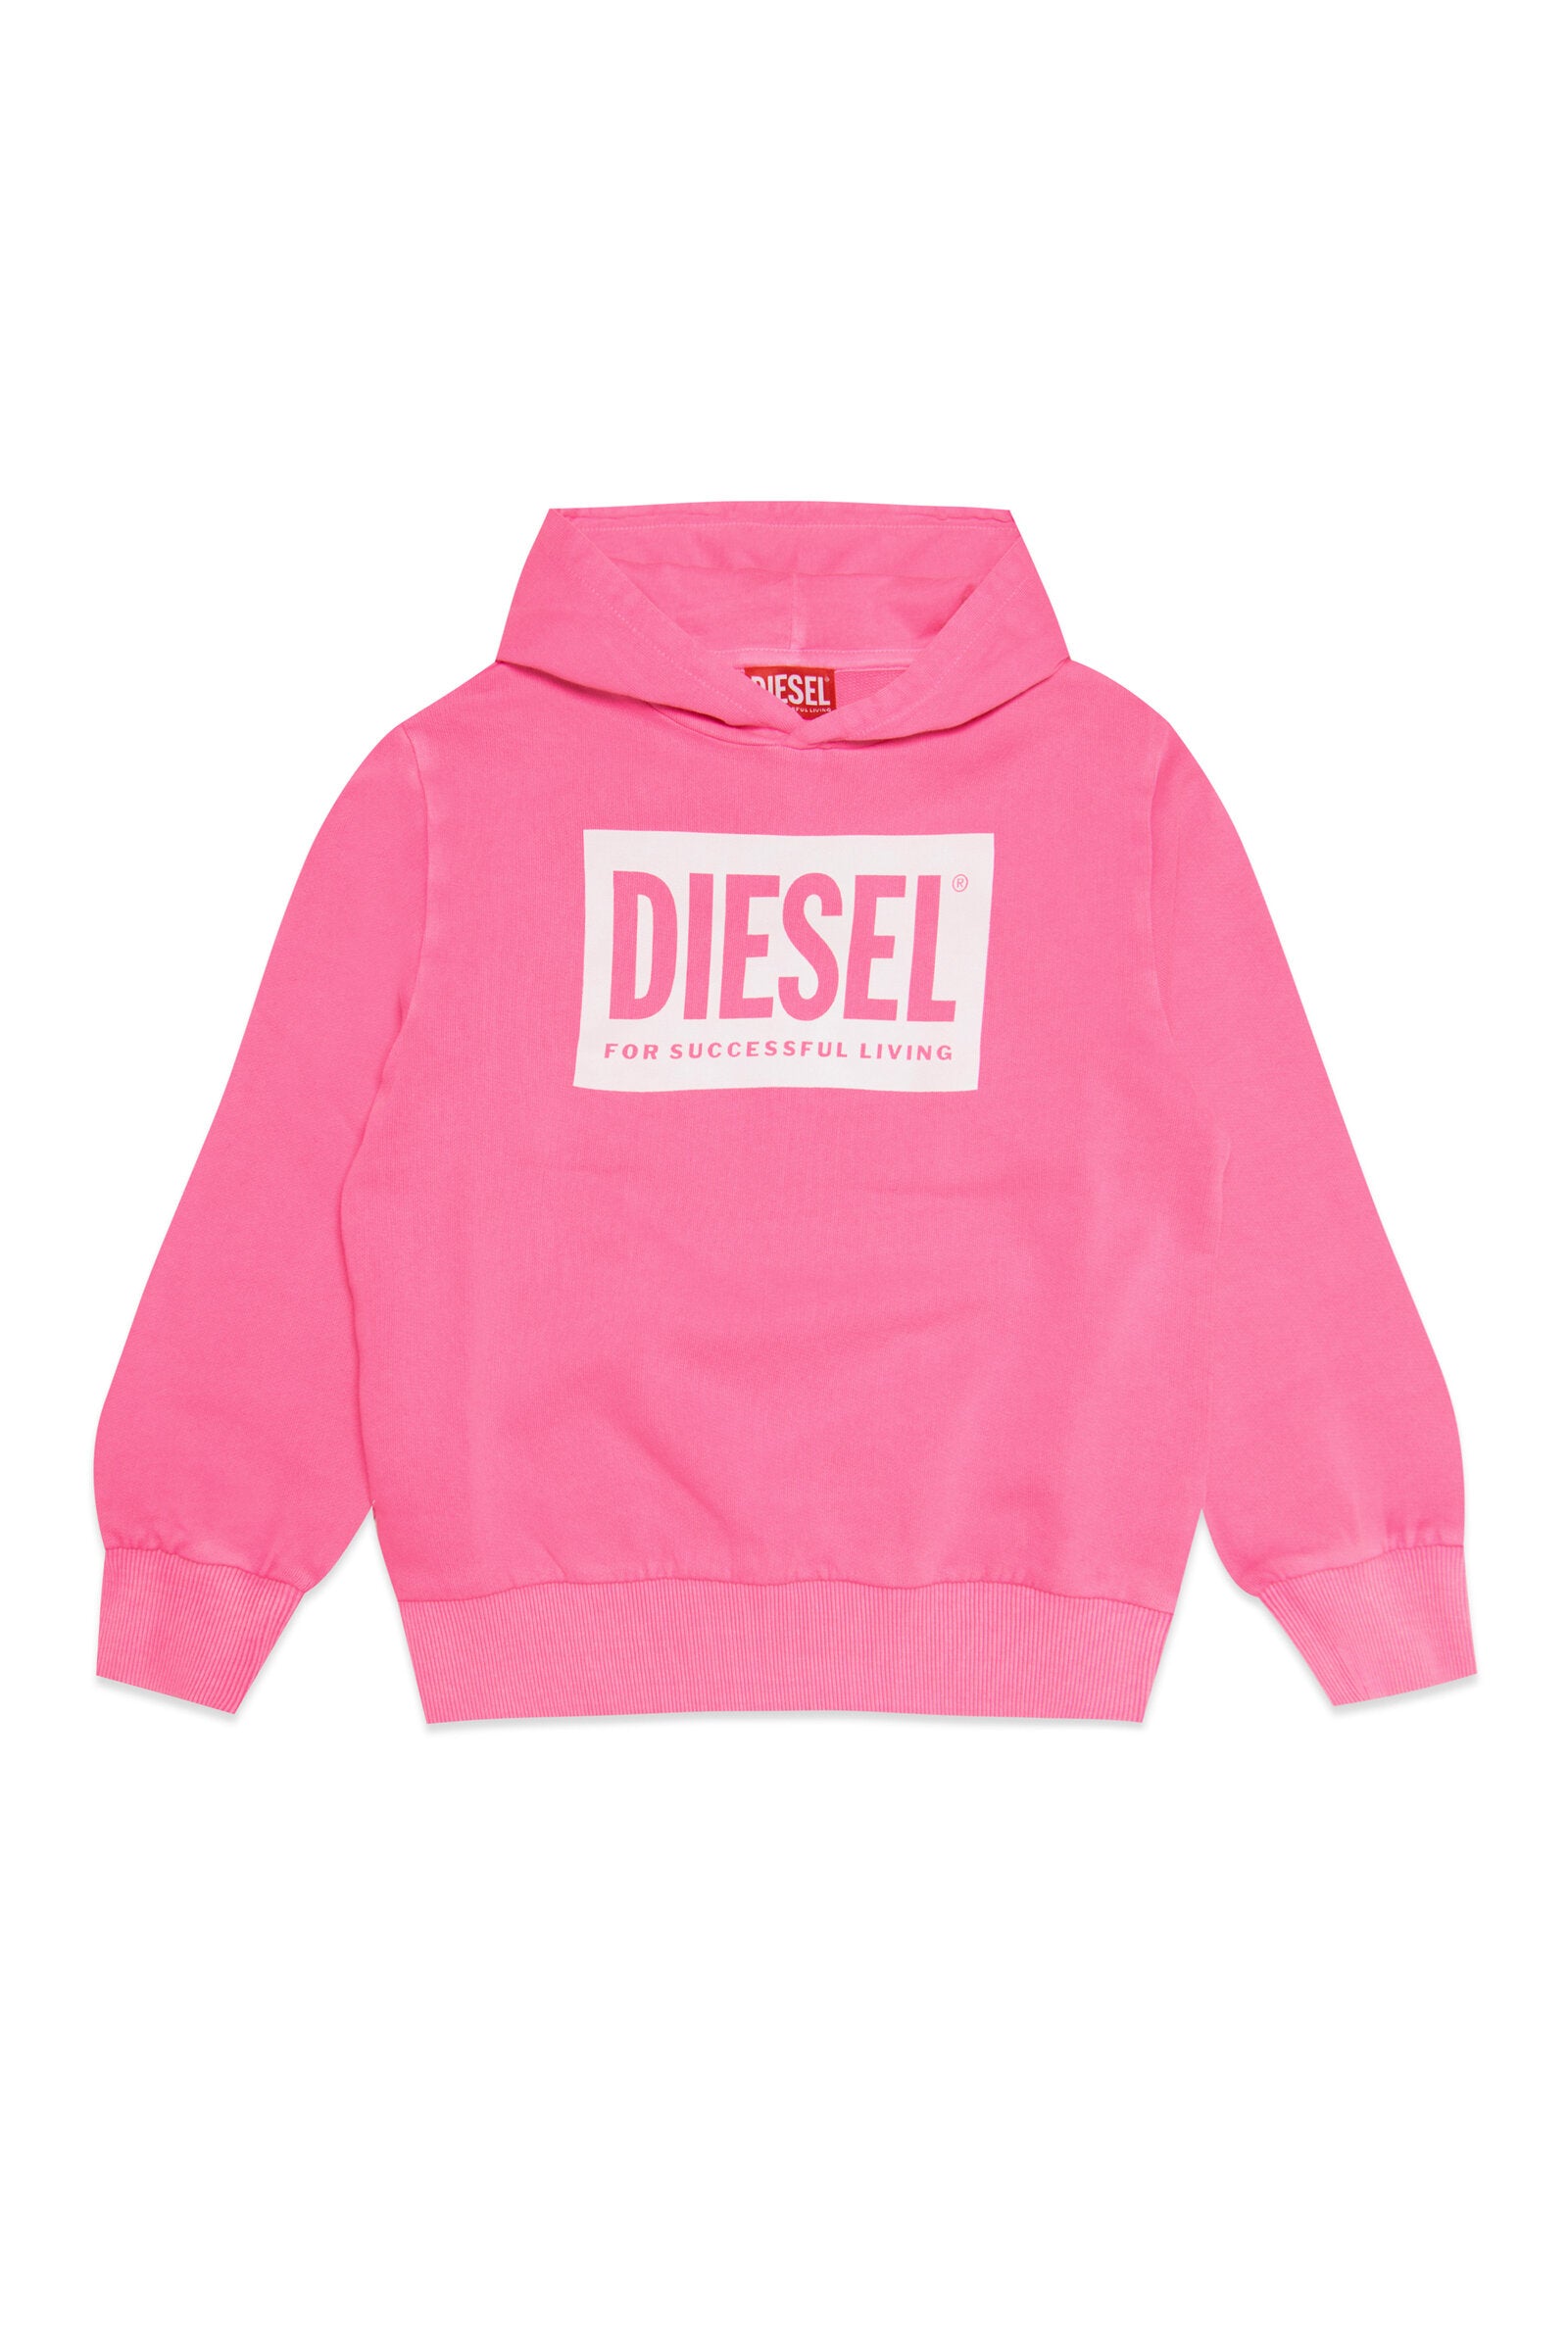 Diesel fluo pink cotton hoodie for children | Brave Kid